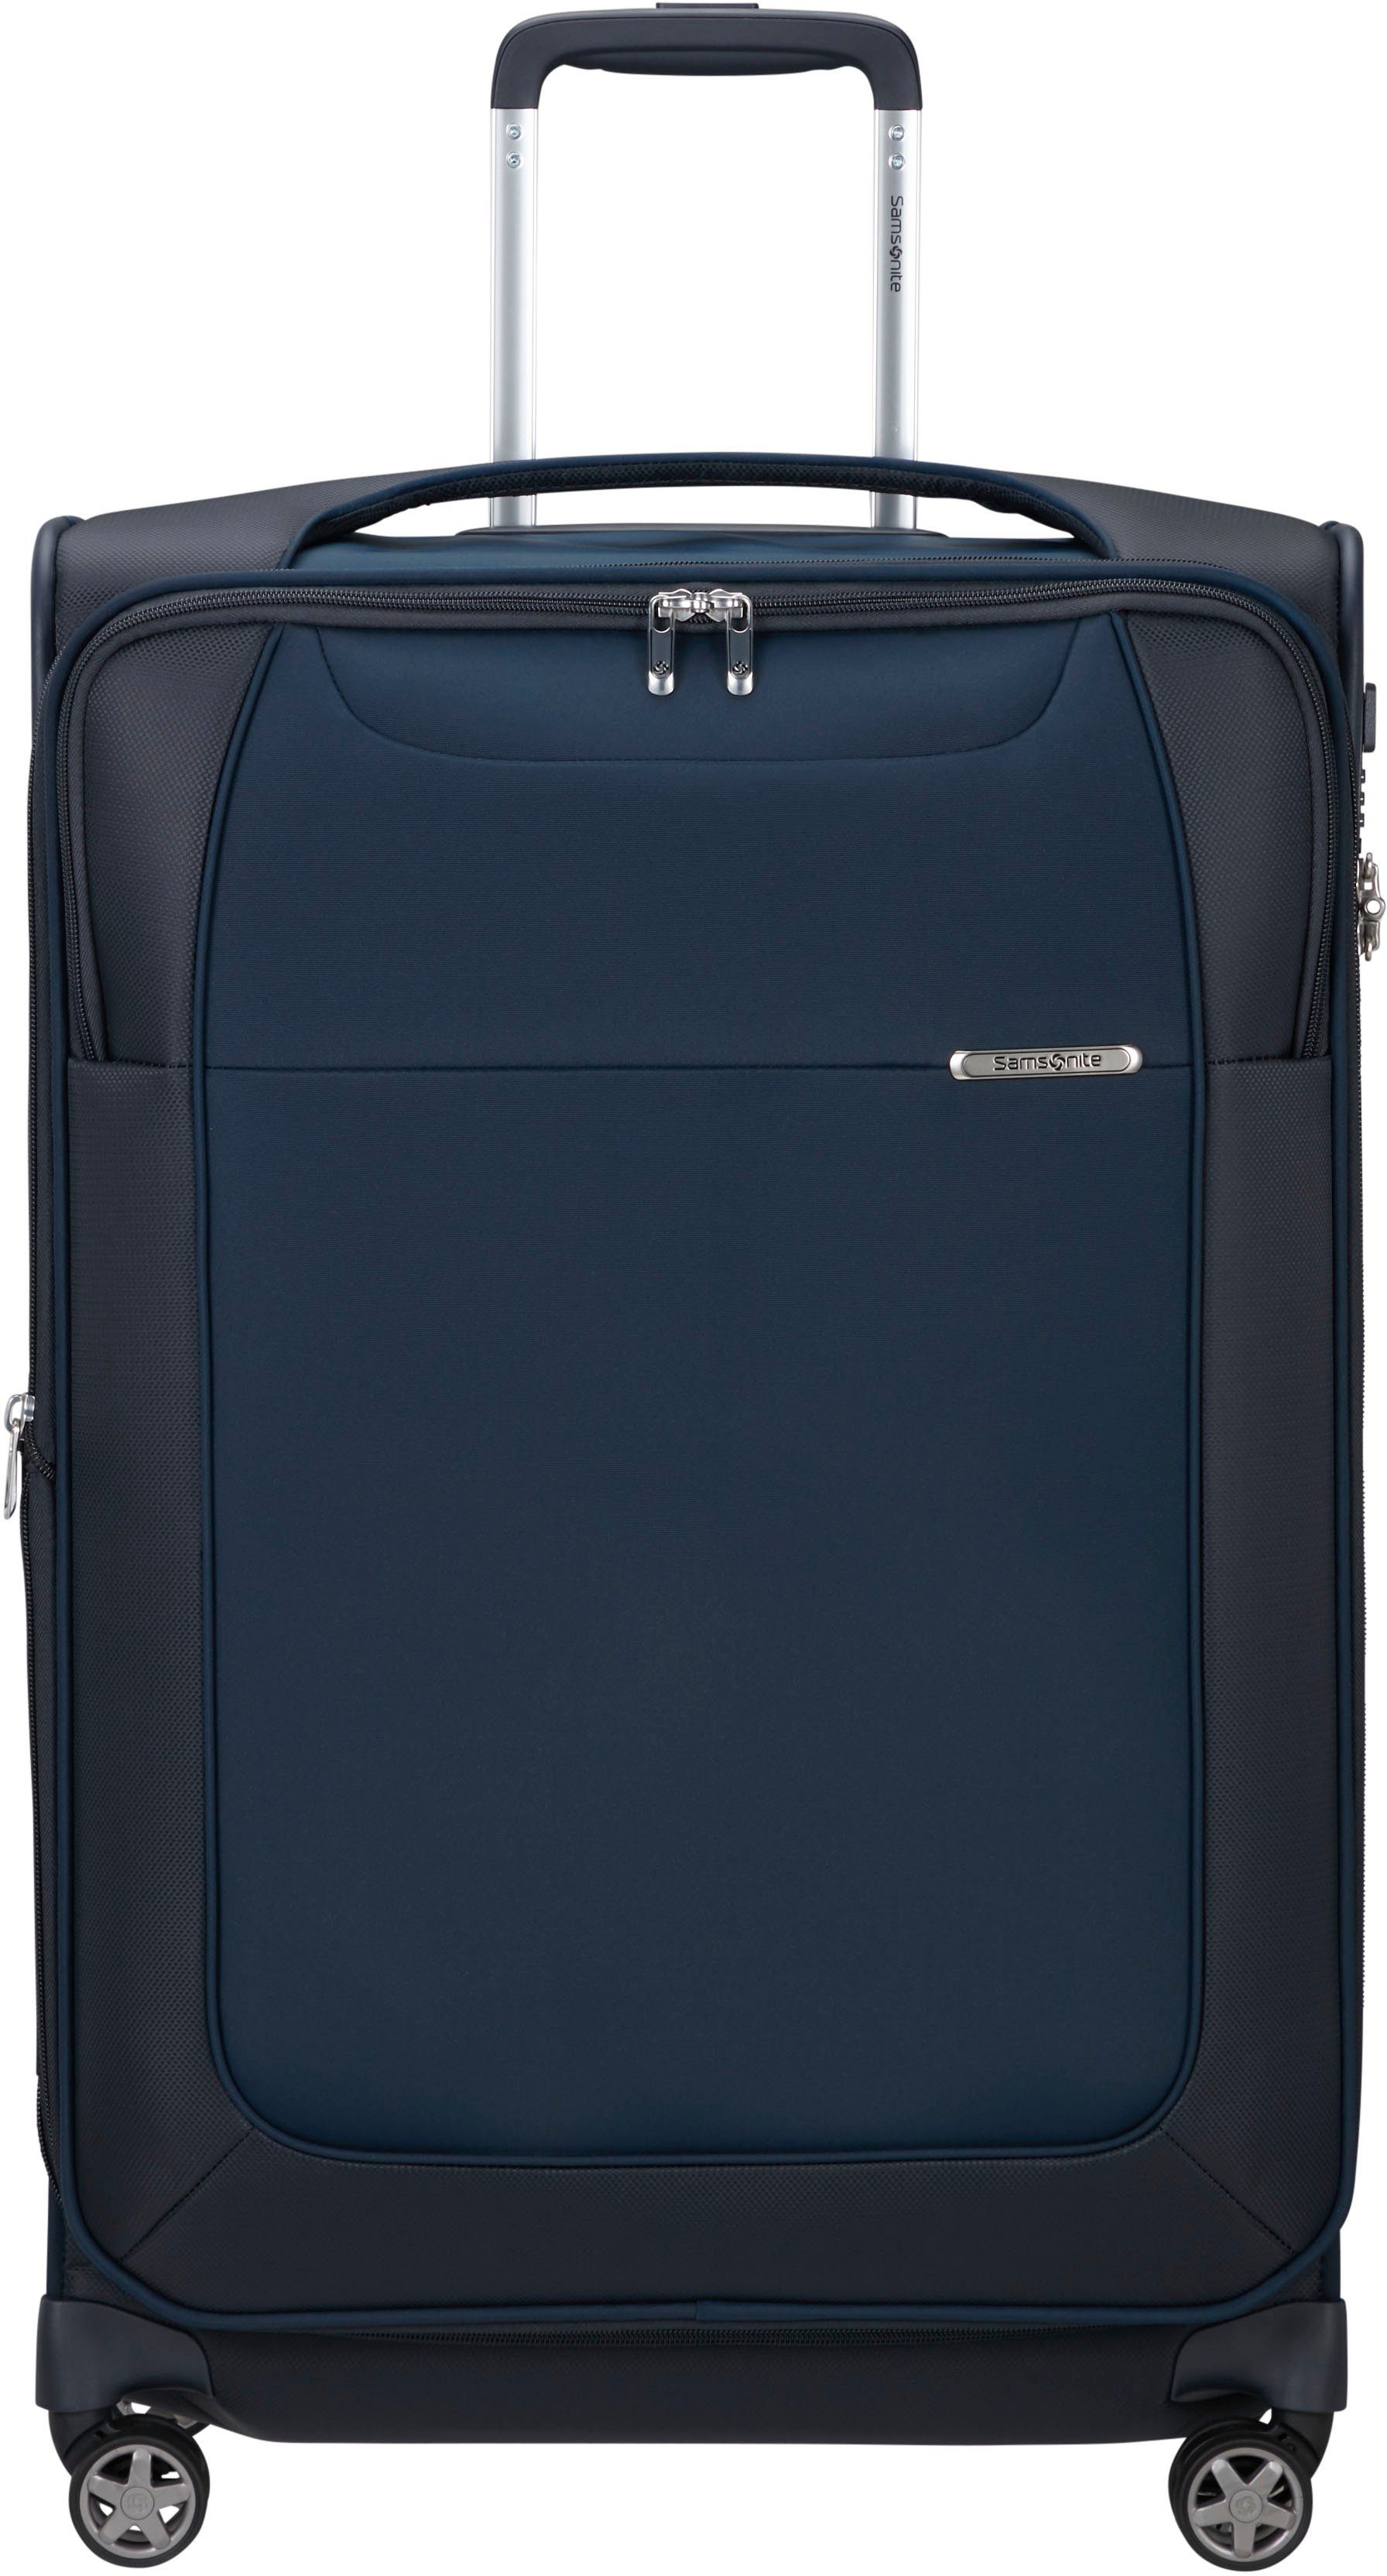 Samsonite Koffer online kaufen | OTTO